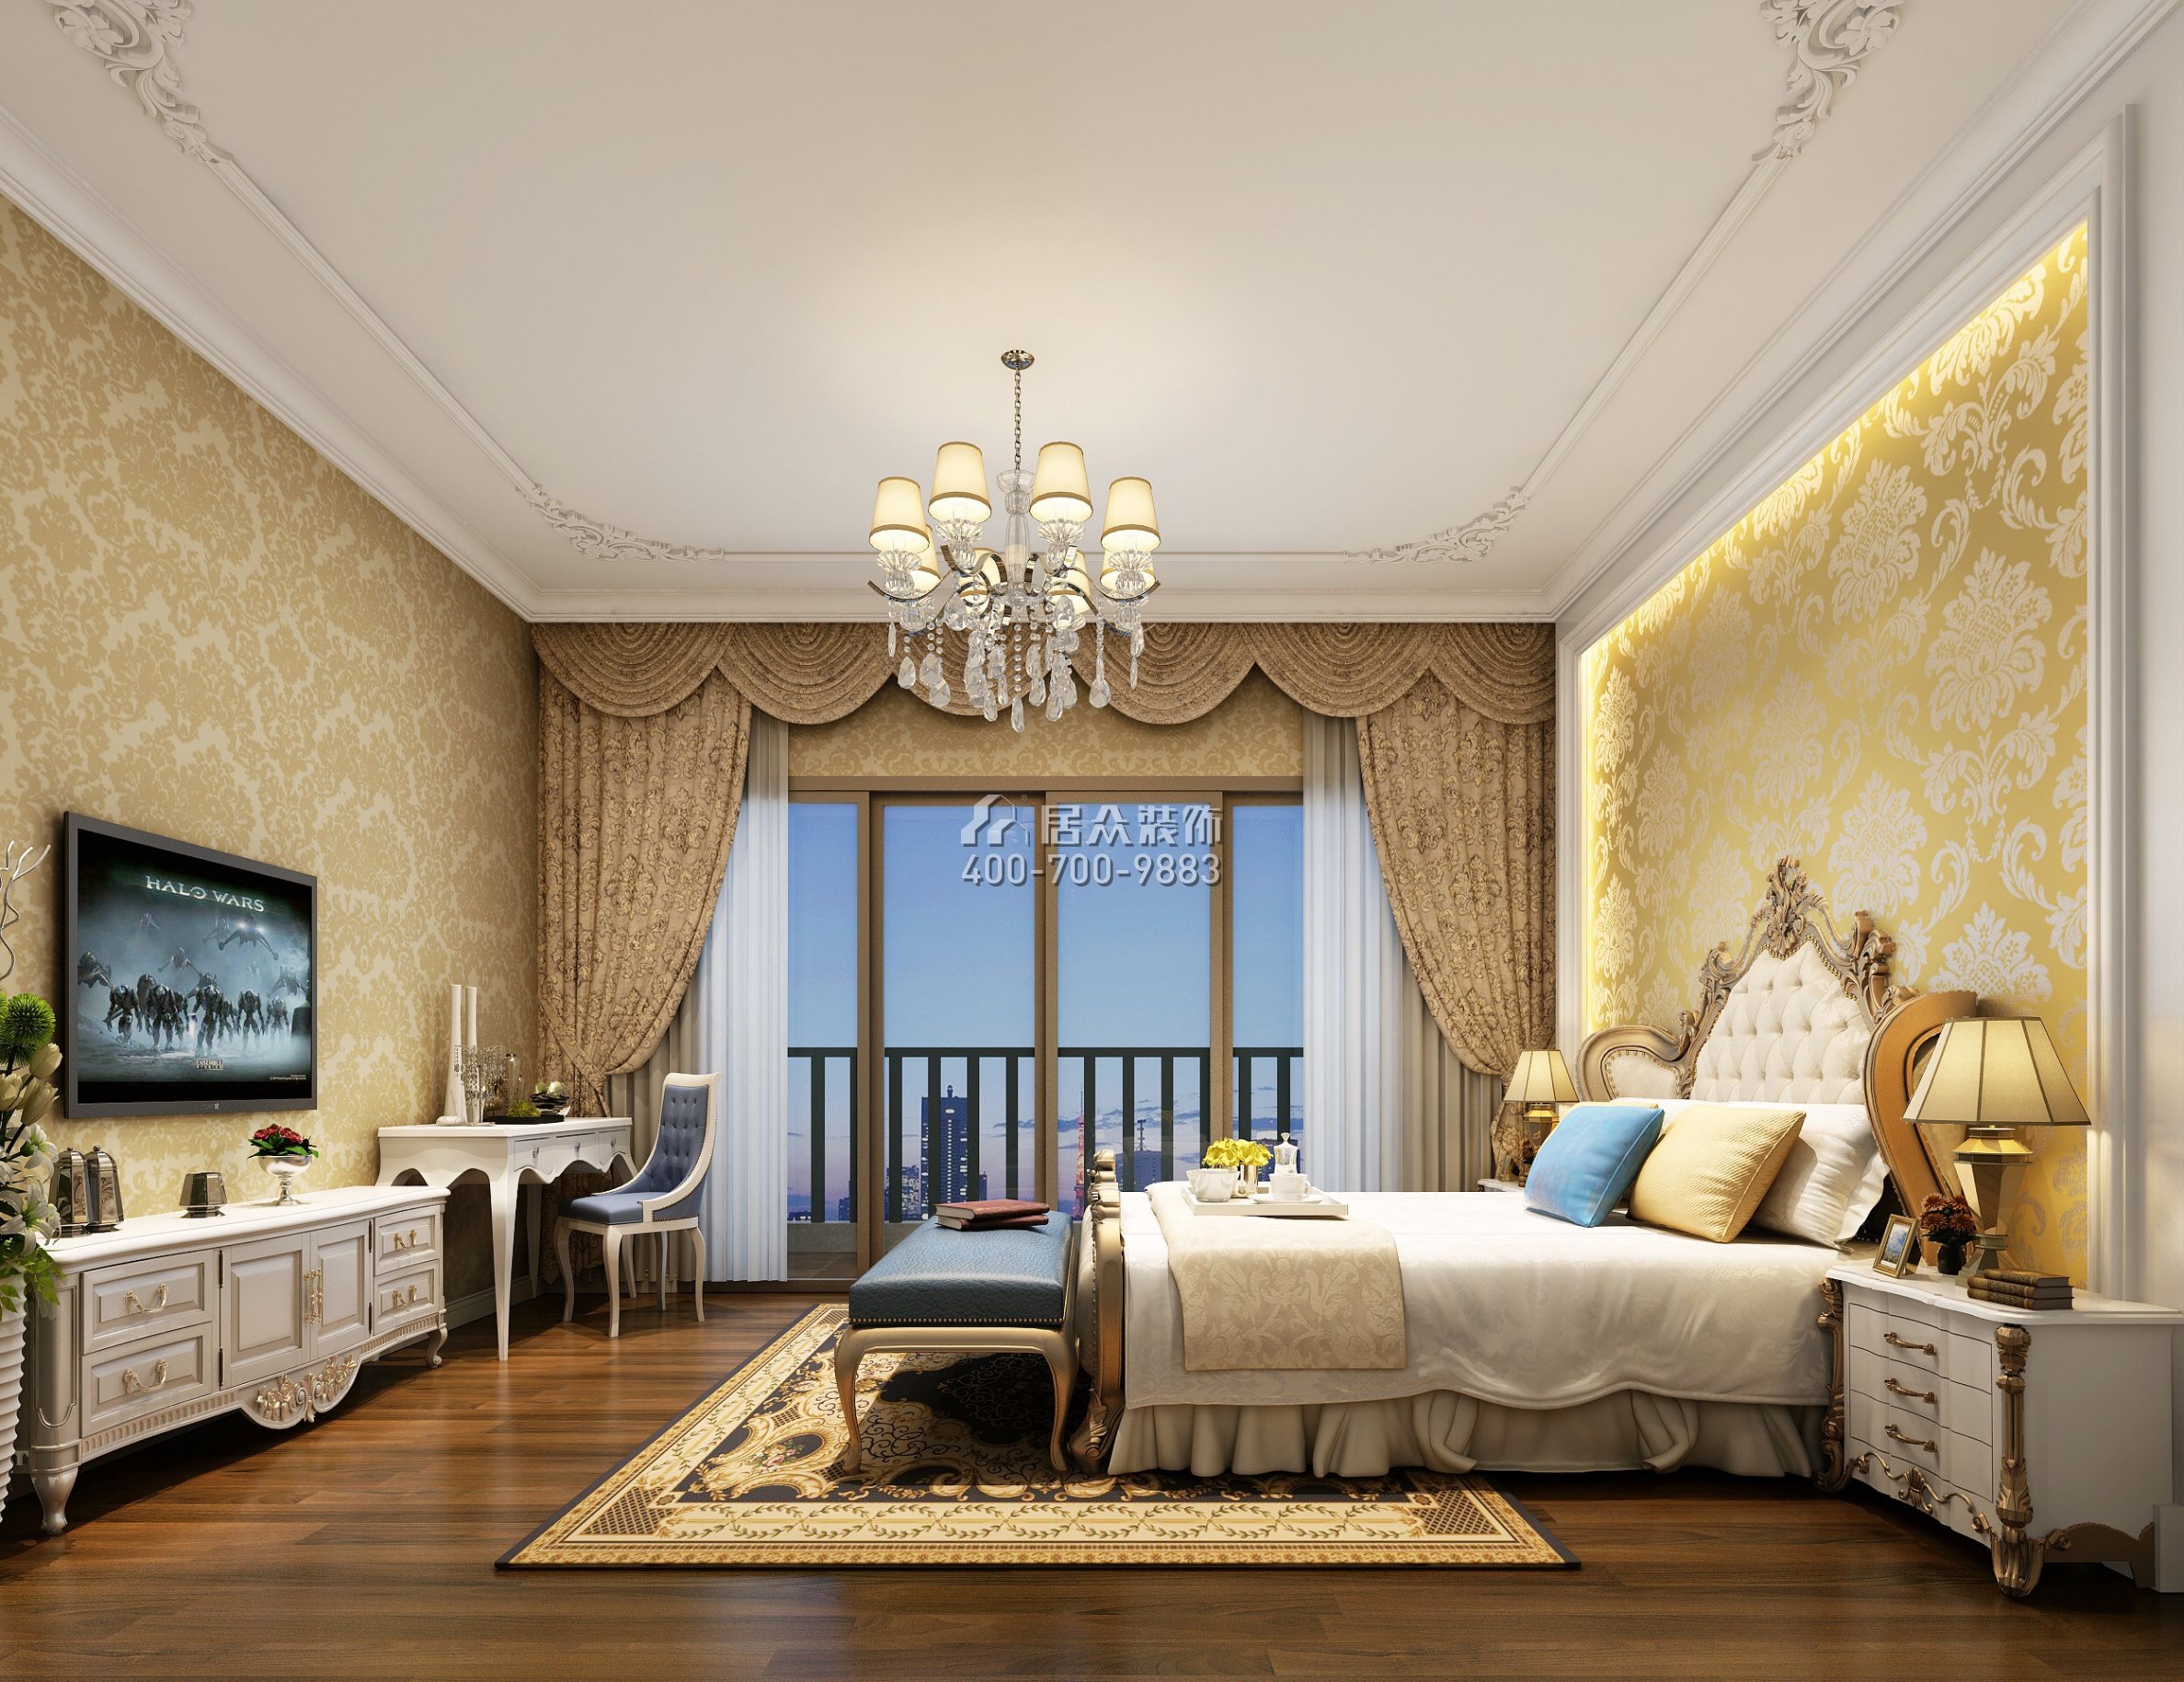 海逸豪庭126平方米歐式風格復式戶型臥室裝修效果圖